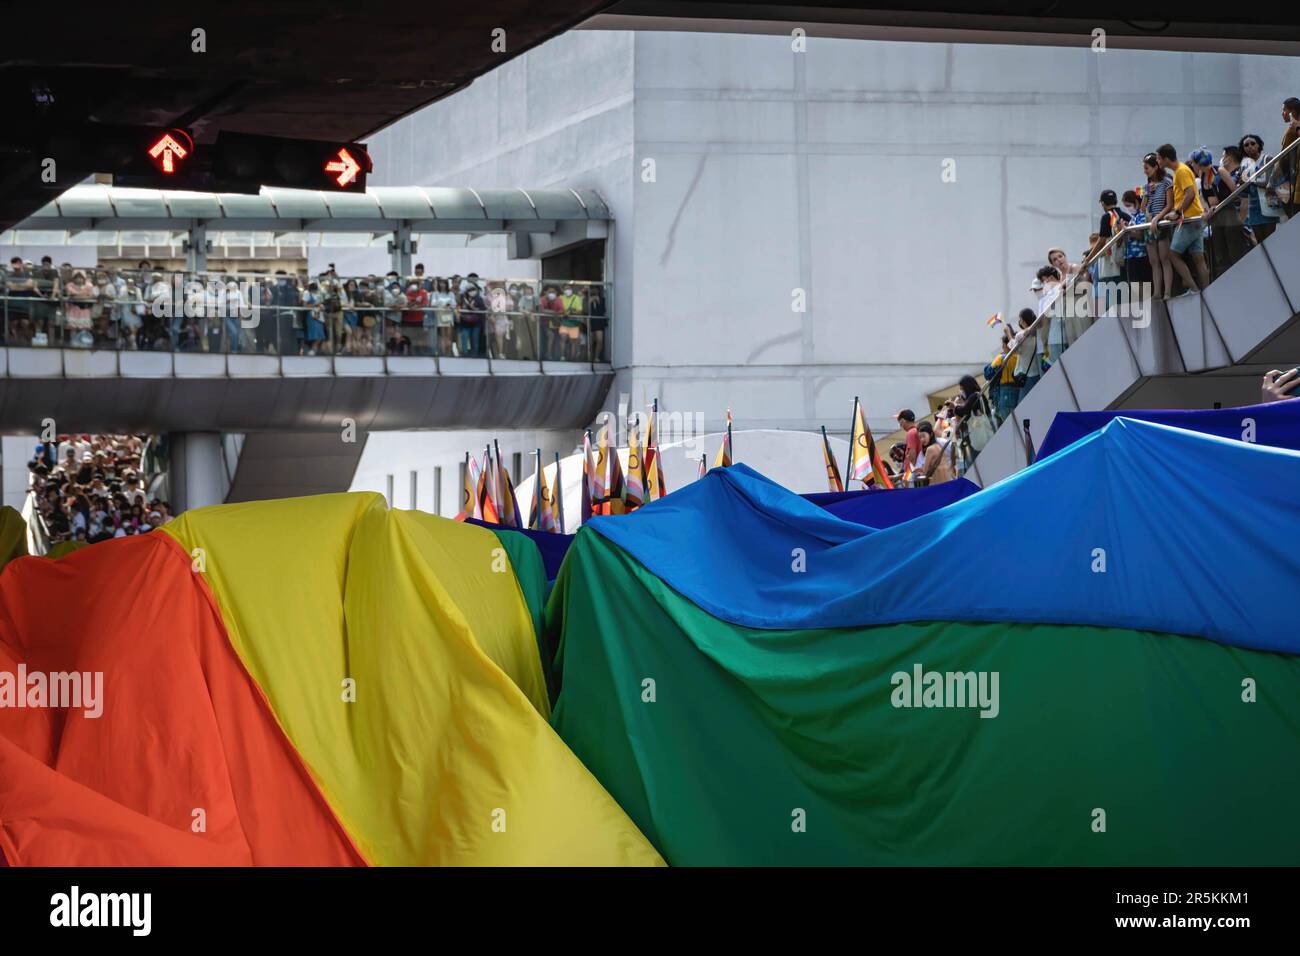 Los participantes del Desfile del Orgullo de Bangkok 2023 son vistos portando una bandera arcoíris gigante en la intersección de Pathumwan. Organizado por la organización sin fines de lucro Naruemit Pride y la Administración Metropolitana de Bangkok, Bangkok PRIDE DESFILE 2023 bajo el tema ìBeyond Genderî Empieza desde el Centro de Arte y Cultura de Bangkok (BACC) en la intersección de Pathumwan con Rama 1 Road. Organizado por la organización sin fines de lucro Naruemit Pride y la Administración Metropolitana de Bangkok, el desfile del orgullo de Bangkok 2023 bajo el tema “Más allá del género” comienza desde el Centro de Arte y Cultura de Bangkok (BACC) en la intersección de Pathumwan con Rama 1 Road. Foto de stock